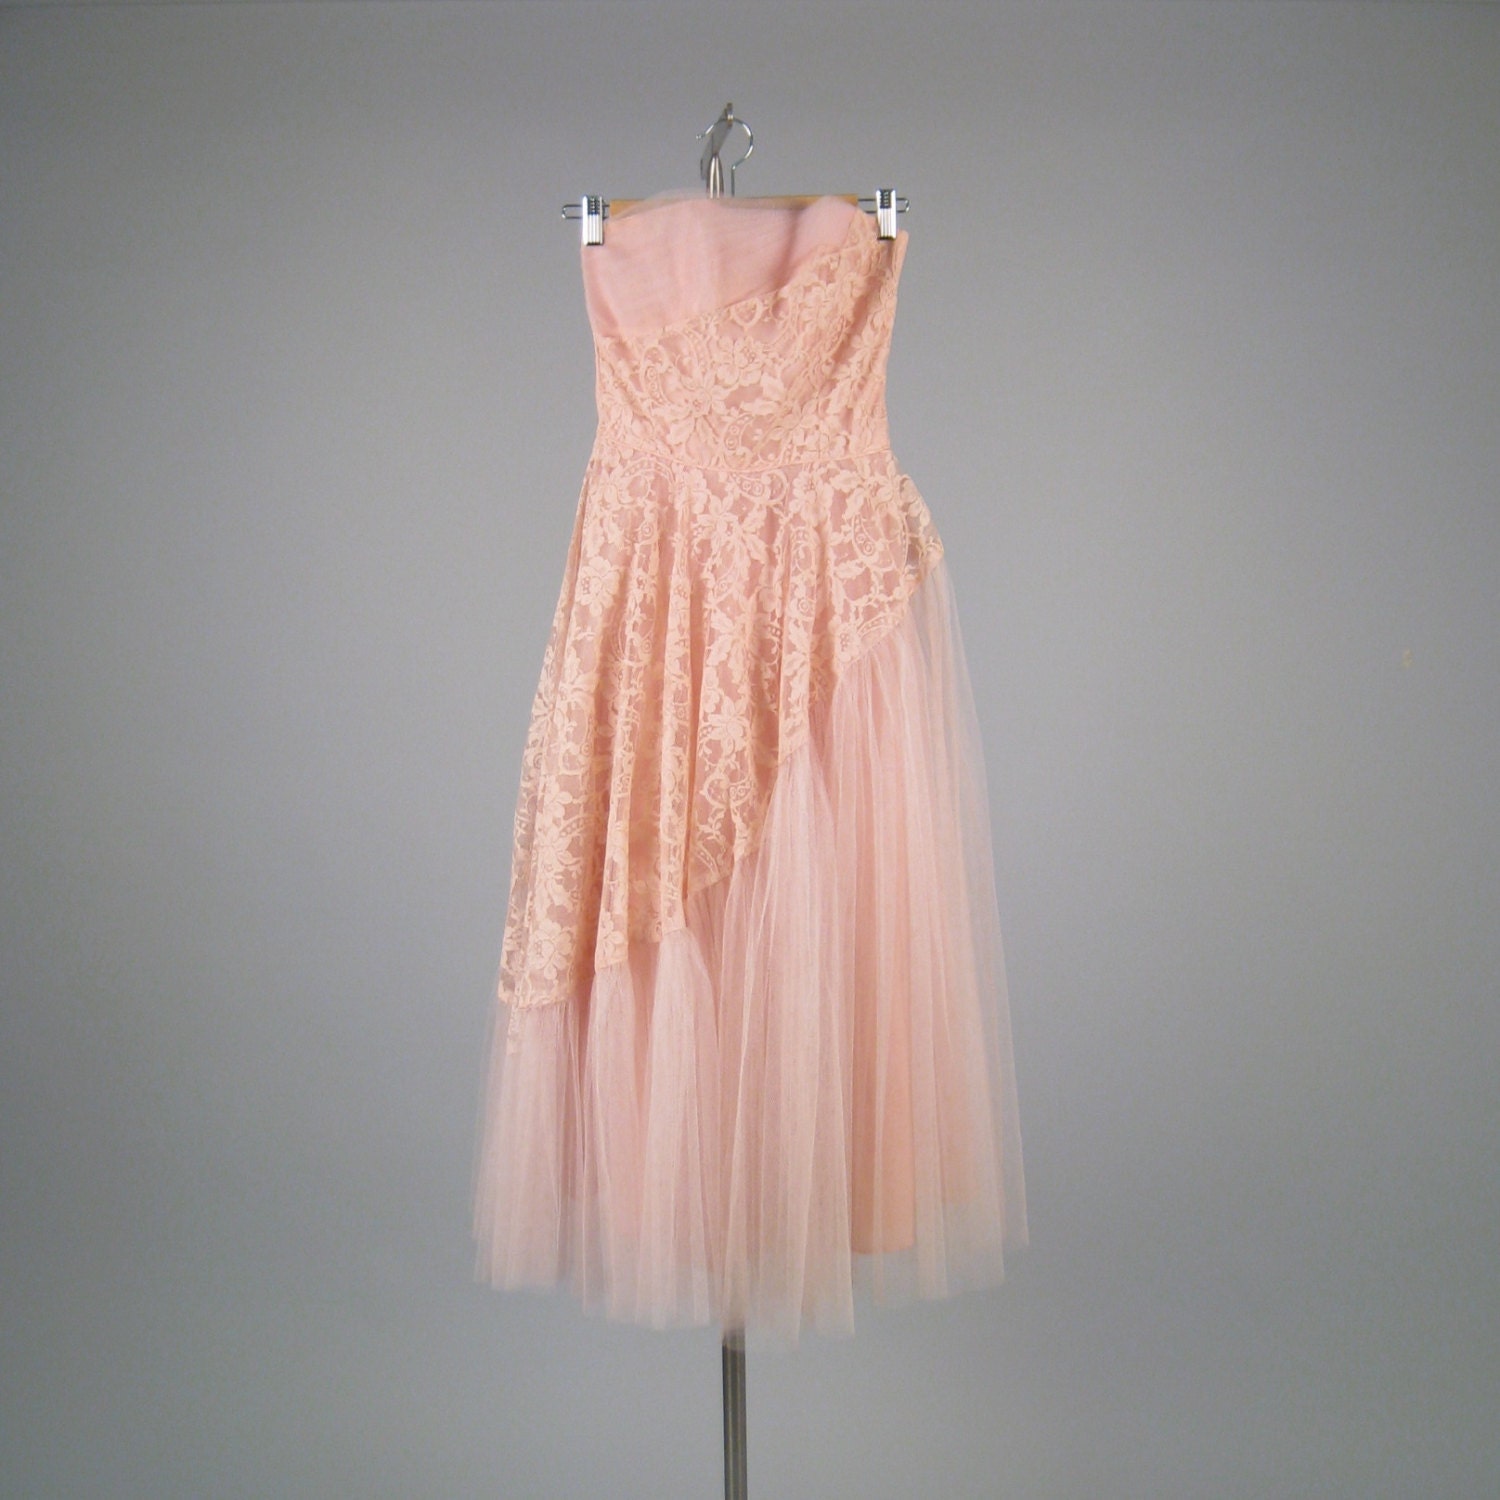 Vintage 1950s bubble gum pink strapless dress